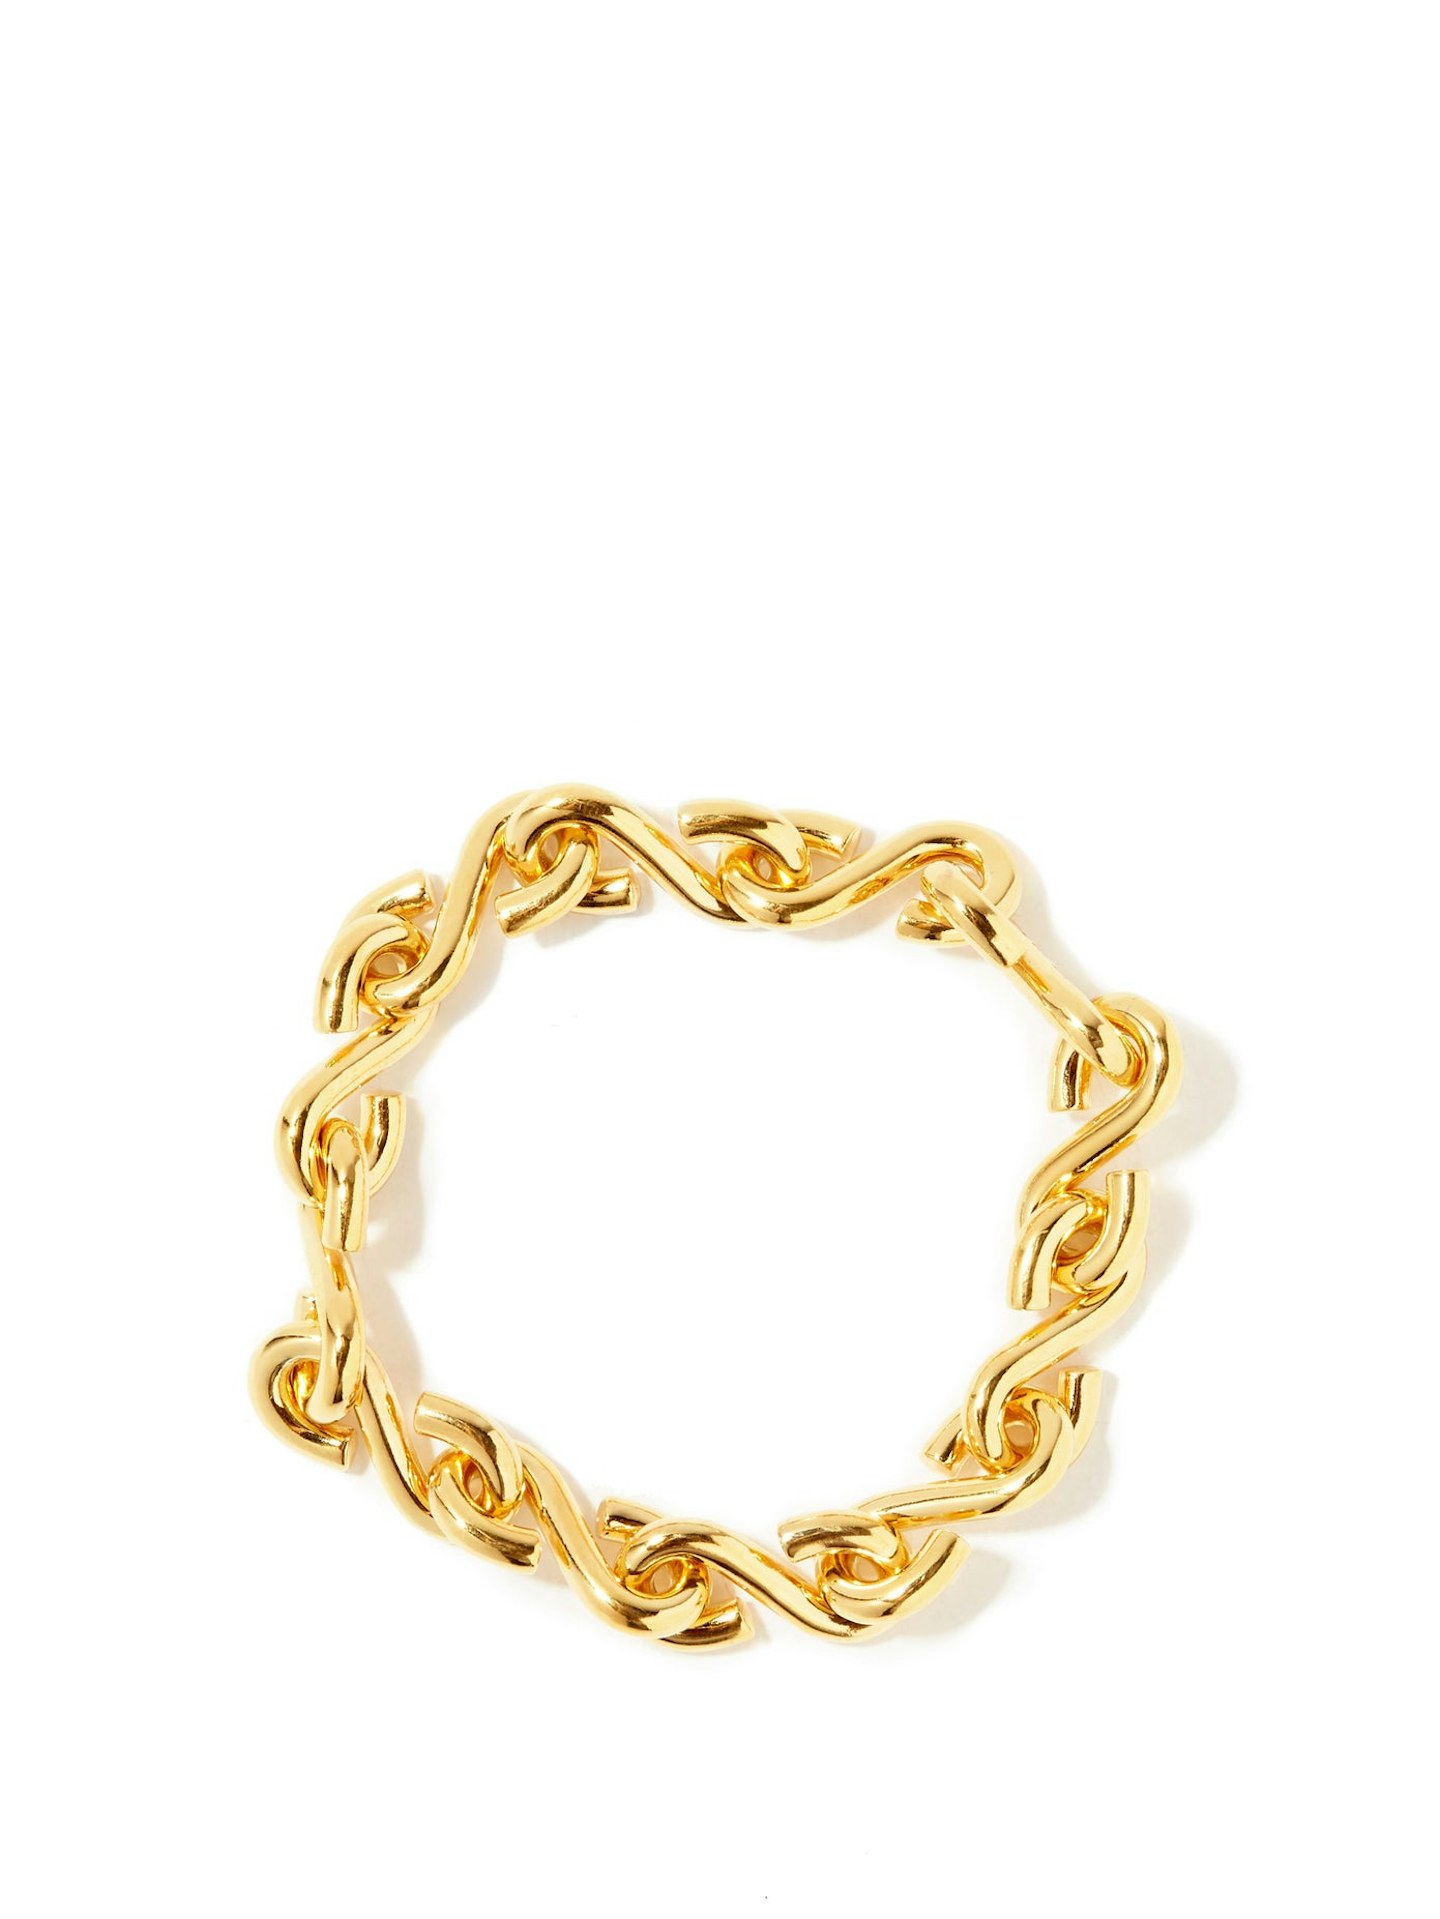 All Blues, S-link Gold-Vermeil Bracelet, £500